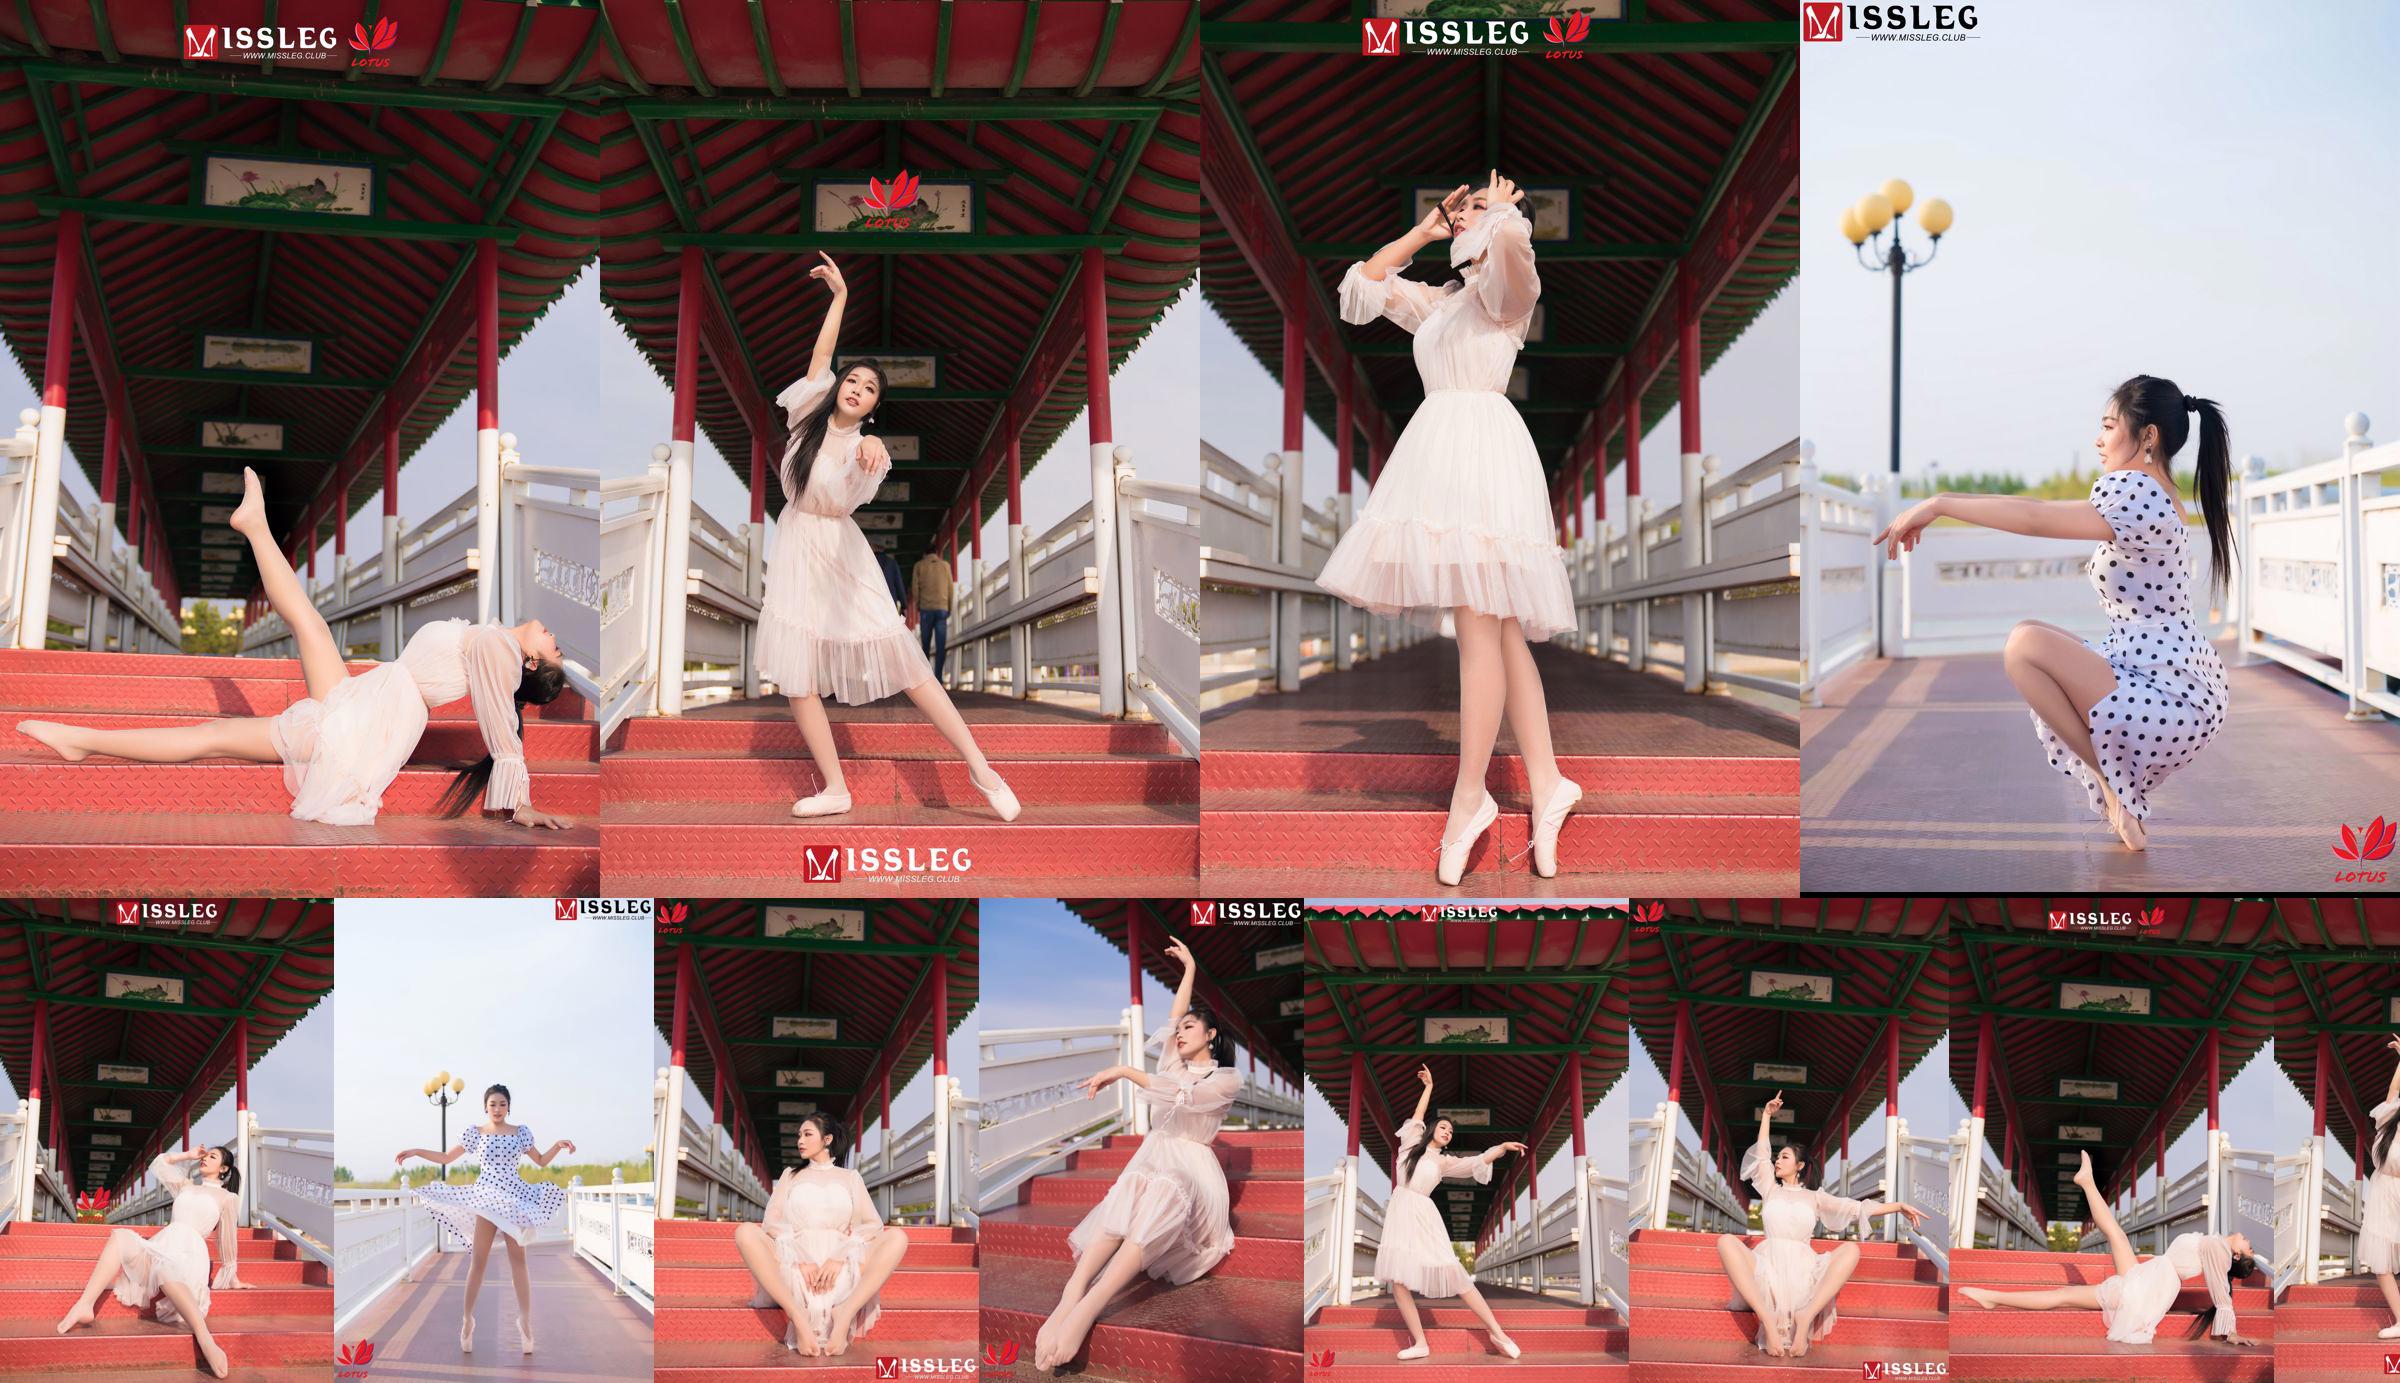 [蜜 丝 MISSLEG] M018 Imp 3 "Scenic Dancer" No.02a28b Page 27